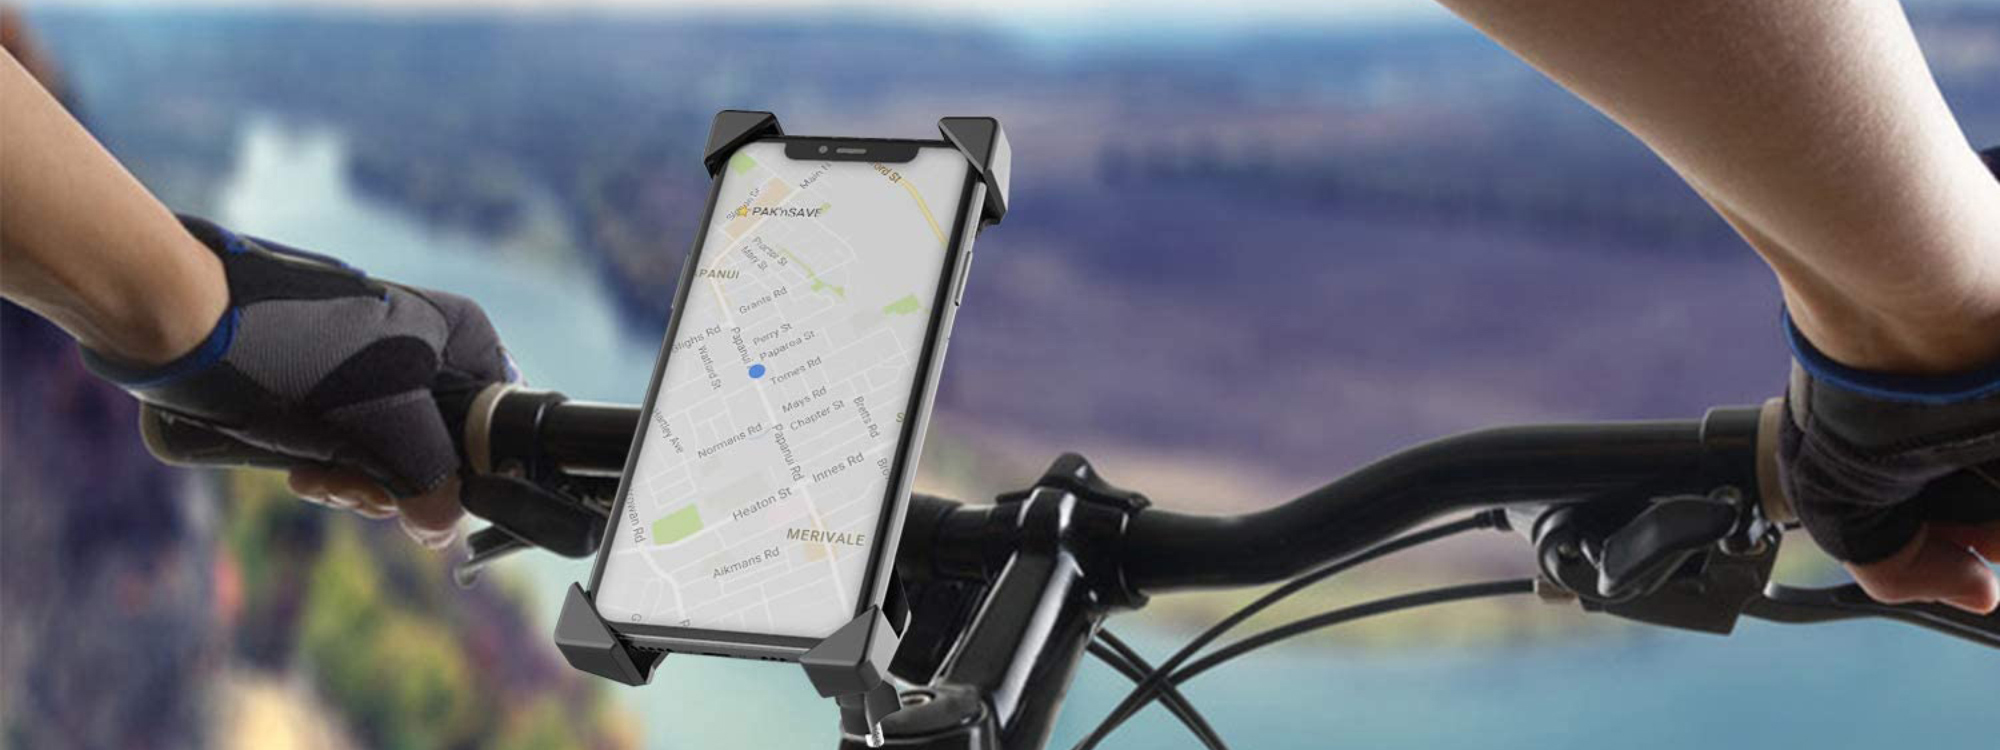 Bike Mobile Holders - Mobile Holders for Bike 